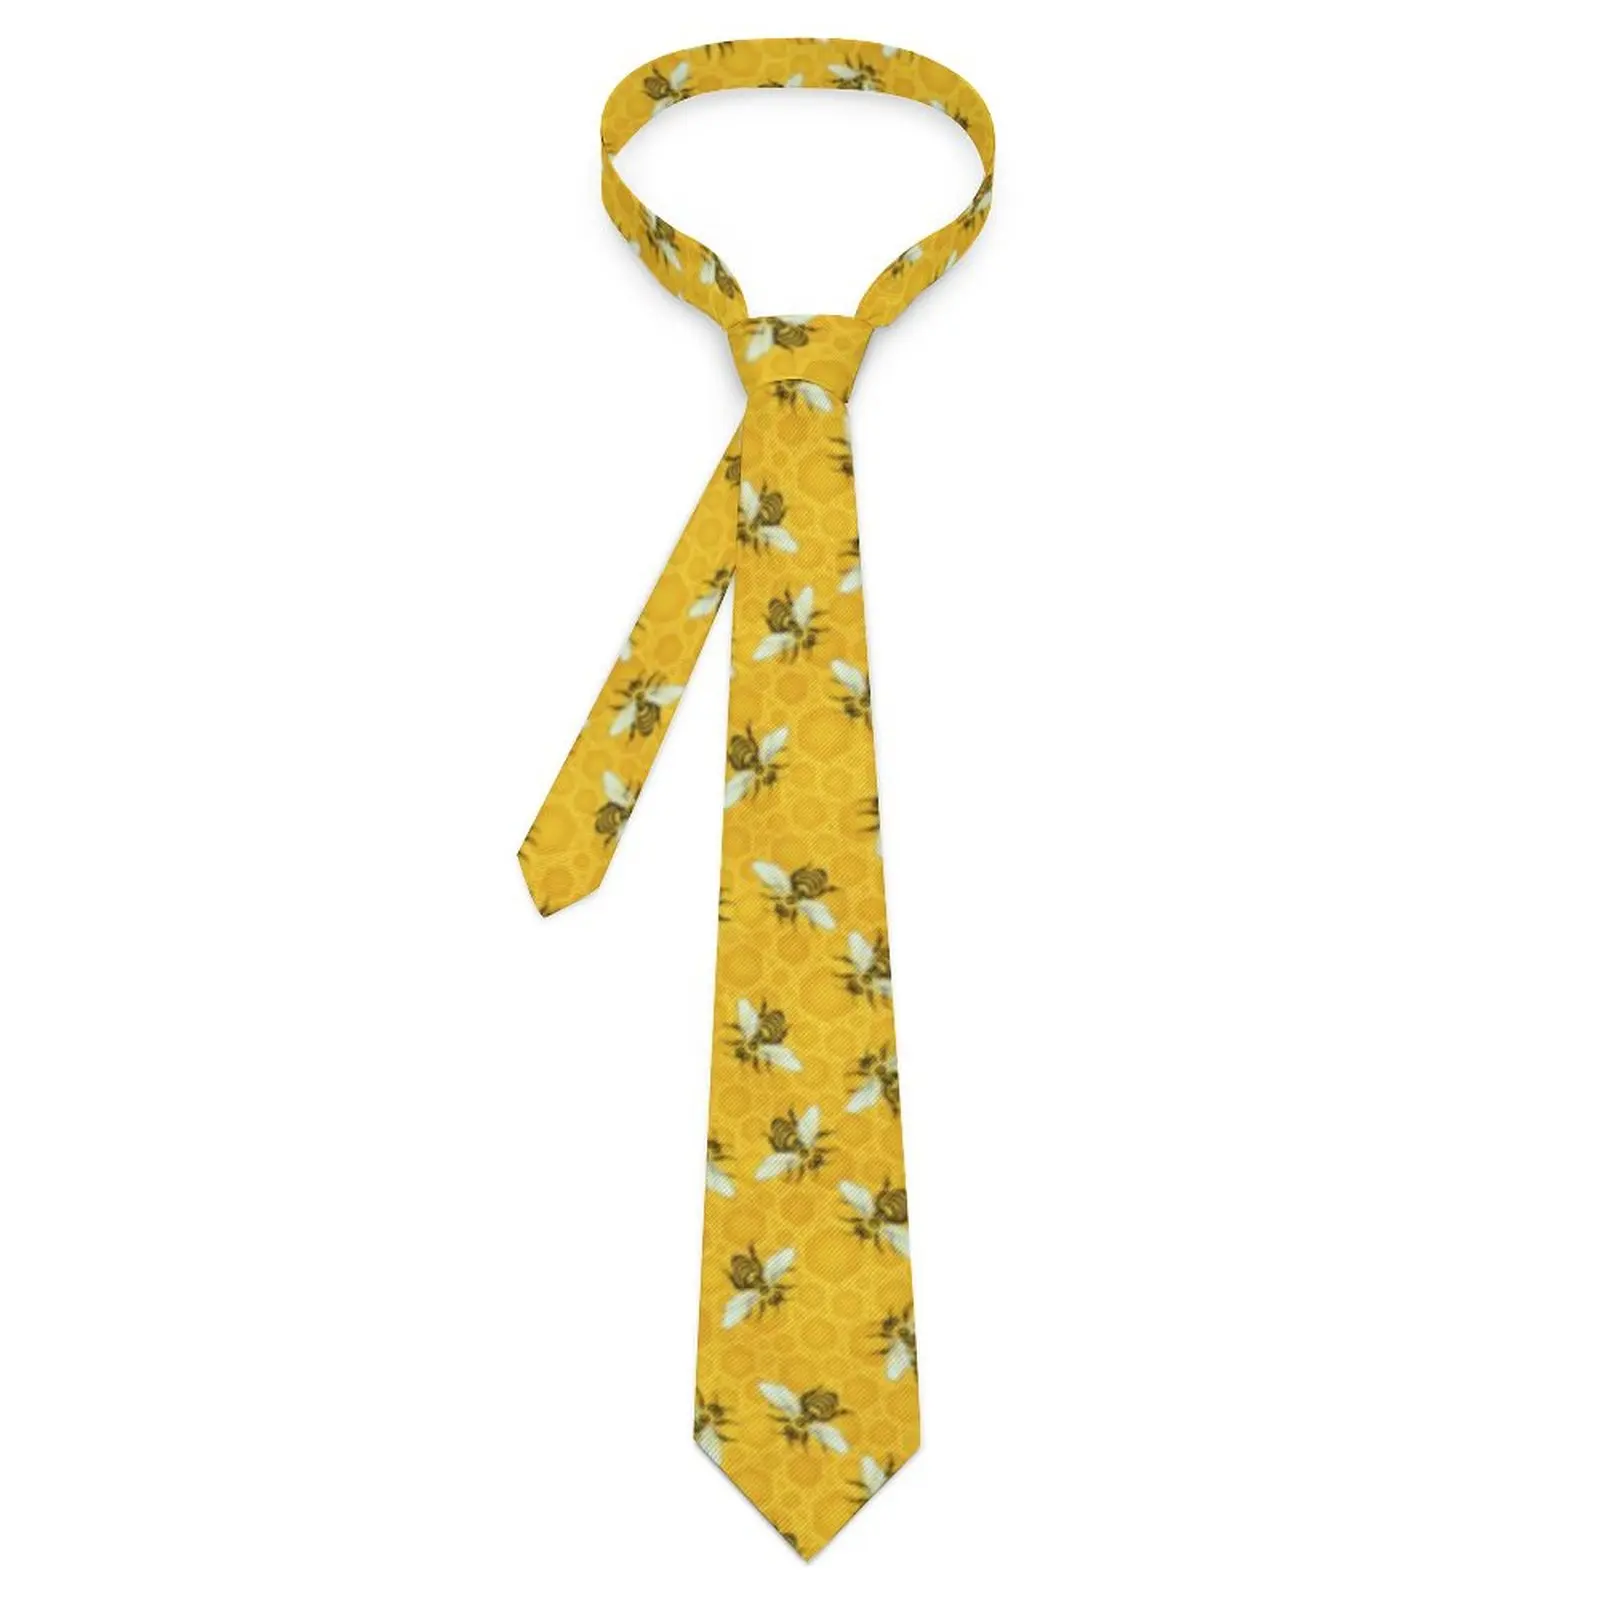 

Галстук с пчелами, пчелами, сотами, милый улей для повседневной носки, галстуки для шеи в стиле ретро, модный галстук для шеи для взрослых, галстук для воротника, галстук в подарок